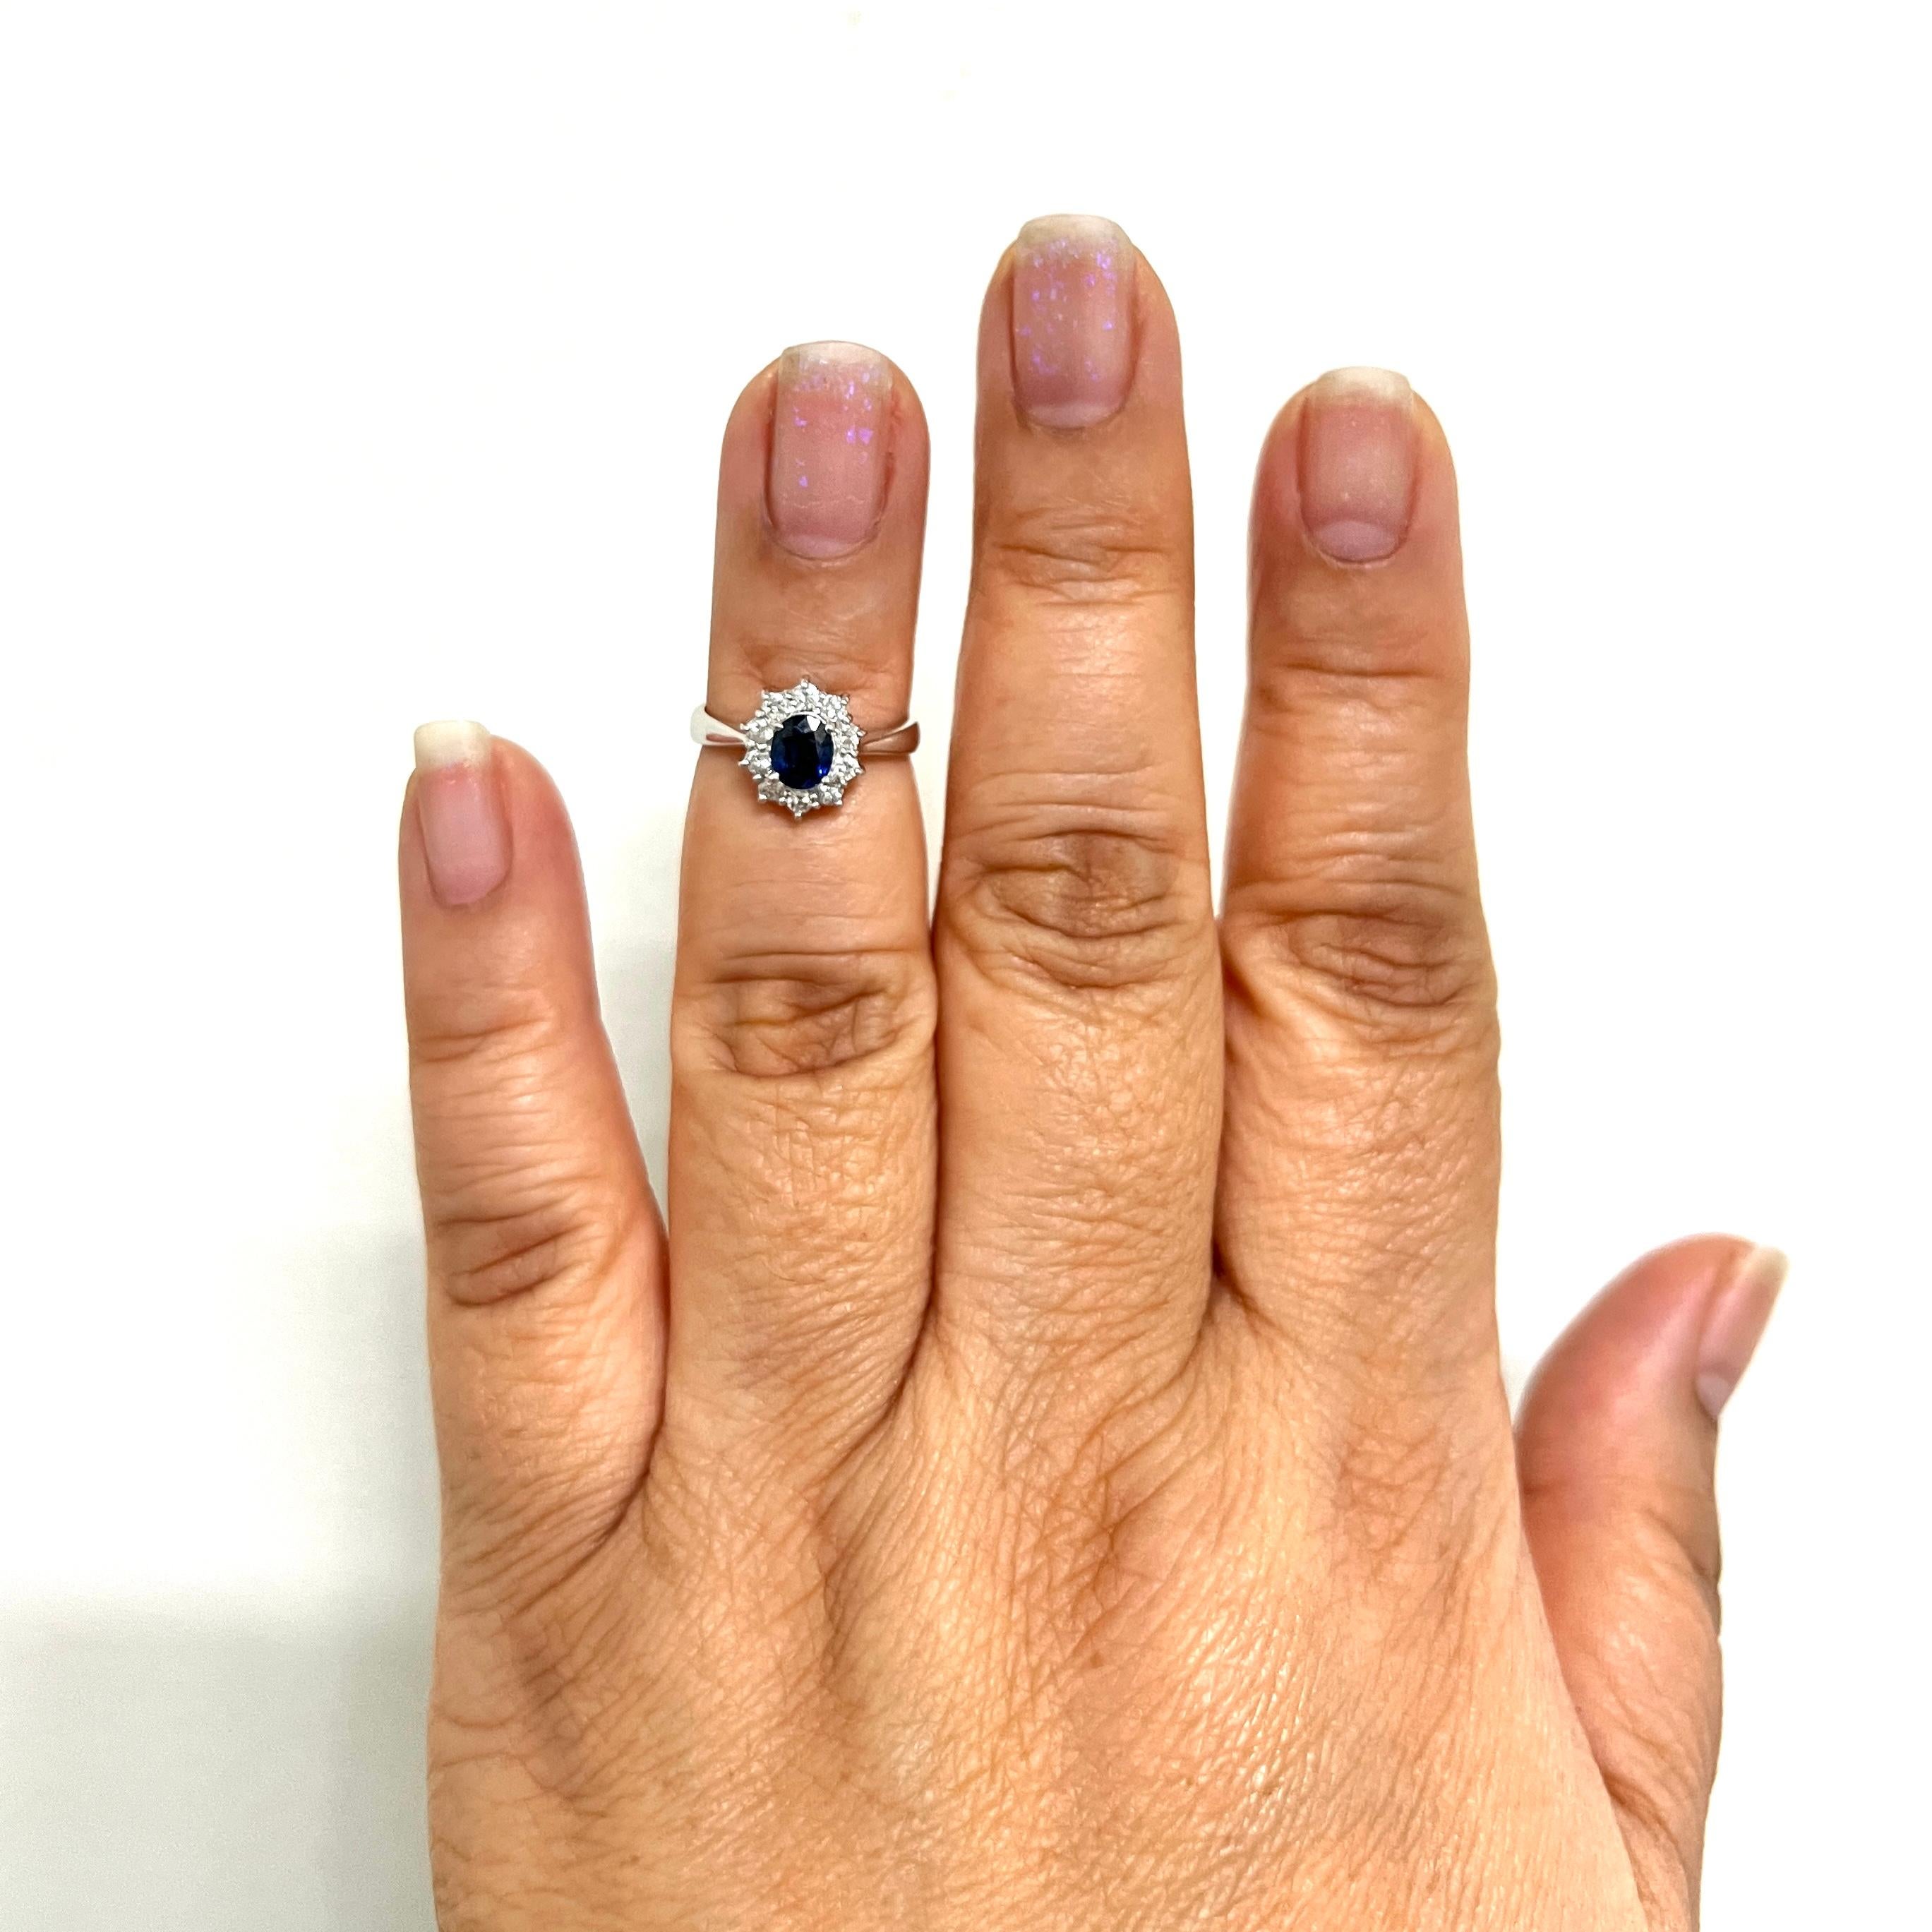 Magnifique saphir bleu ovale de 0,59 ct. et diamants blancs ronds de 0,27 ct.  Fait à la main en platine.  Bague de taille 4.